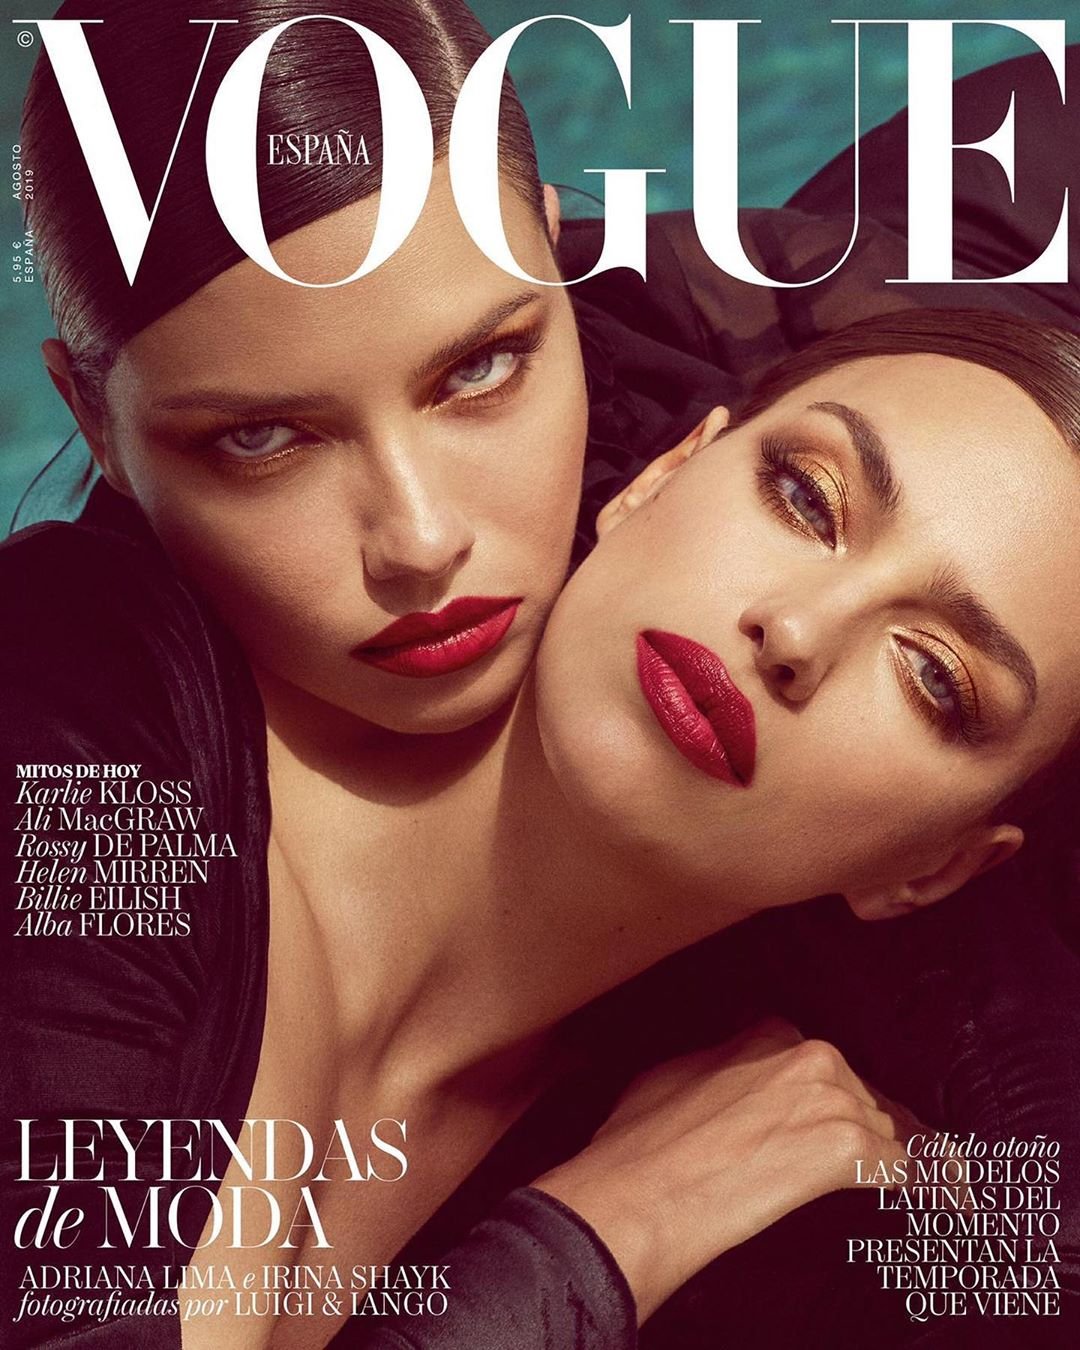 Сексапільні Ірина Шейк та Адріана Ліма вразили фотосесією в стилі БДСМ для журналу Vogue - фото 442399